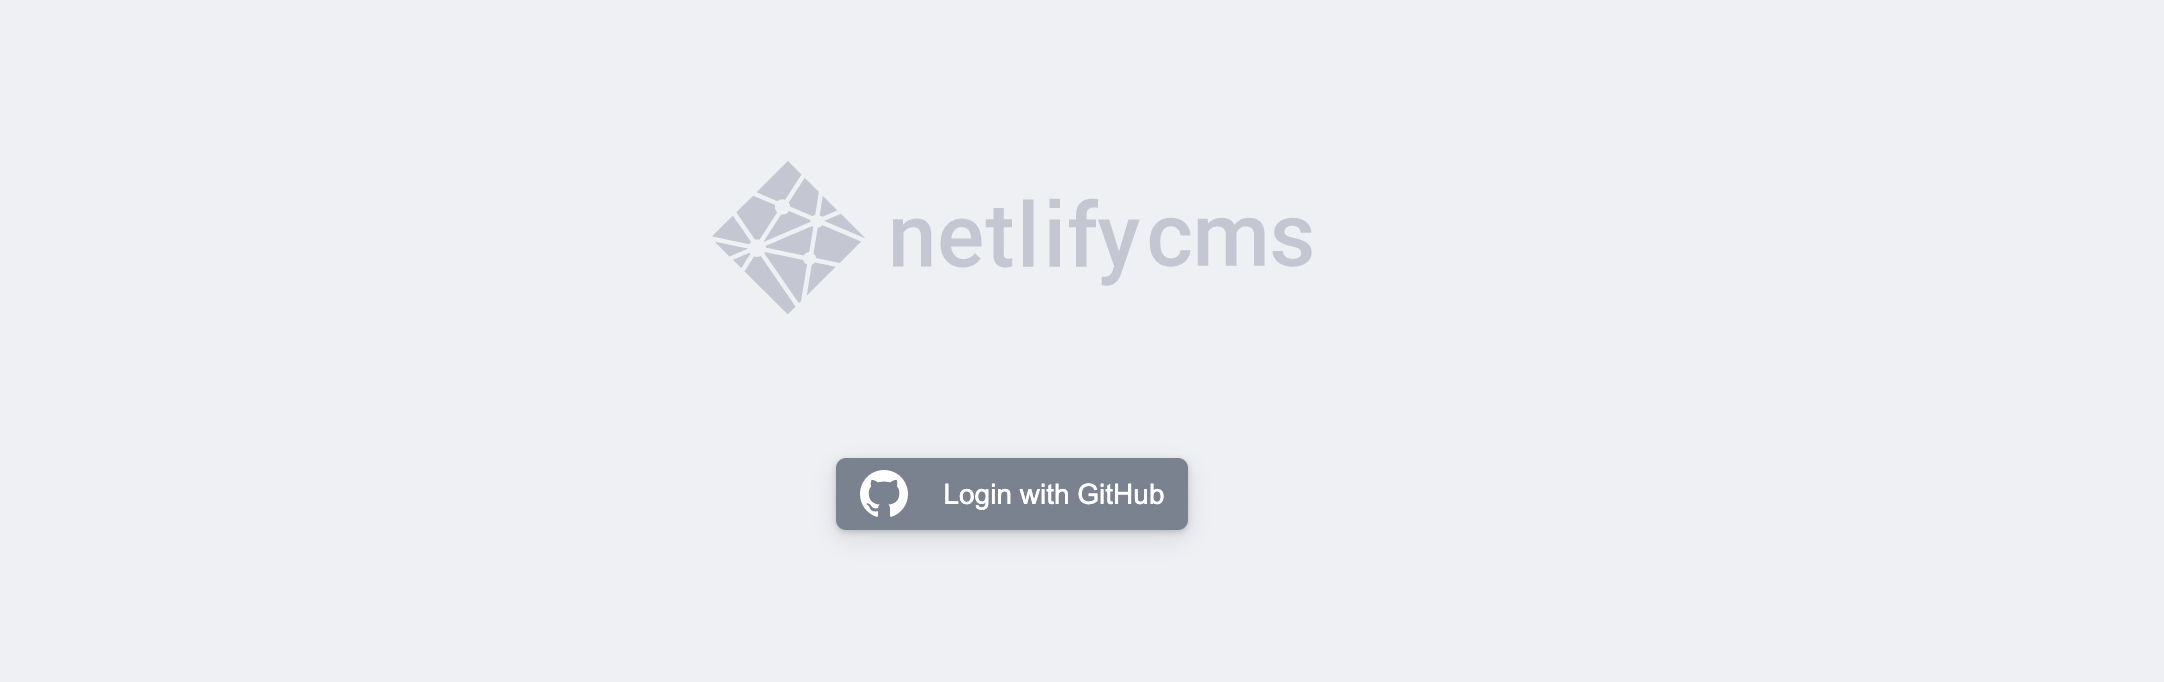 Netlify CMS Login Page